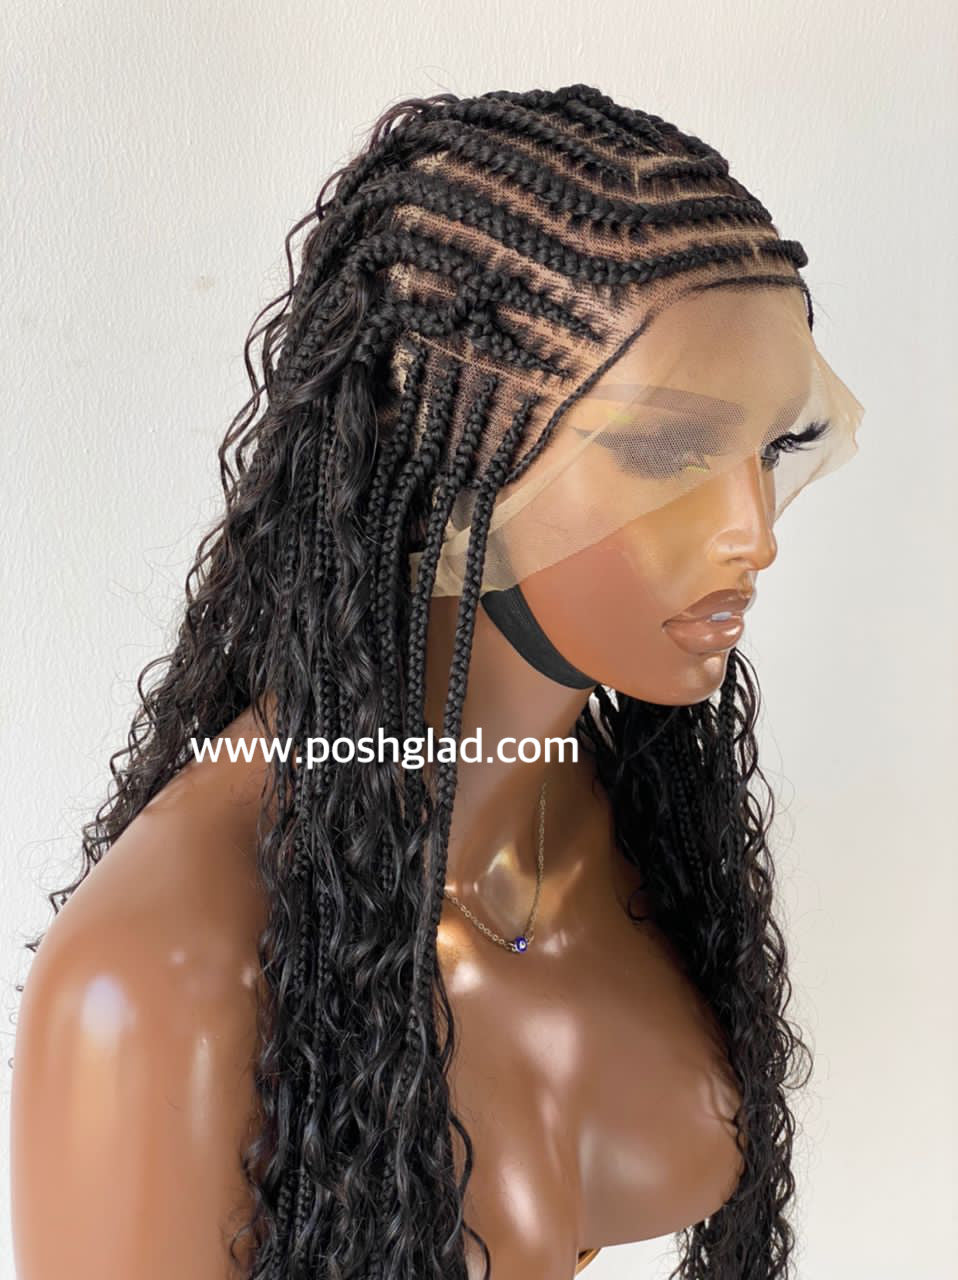 French Braid Bohemian Cornrow Wig 100% Human Hair Dash - Poshglad Braided  Wigs